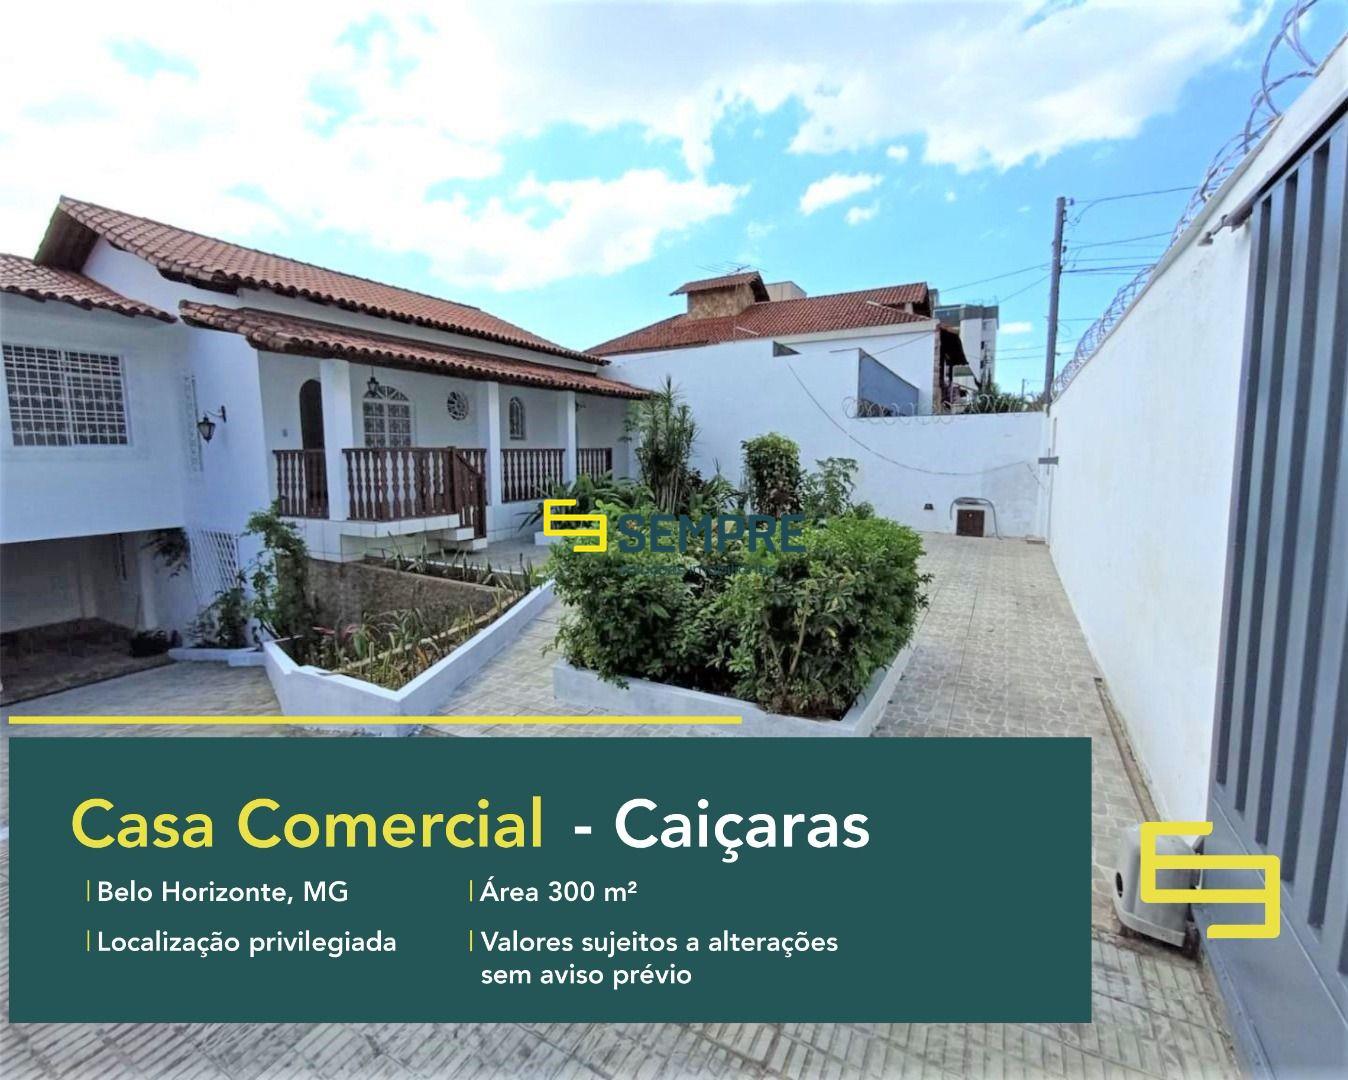 Casa comercial à venda no Caiçaras em Belo Horizonte, excelente localização. O estabelecimento comercial conta com área de 300 m².